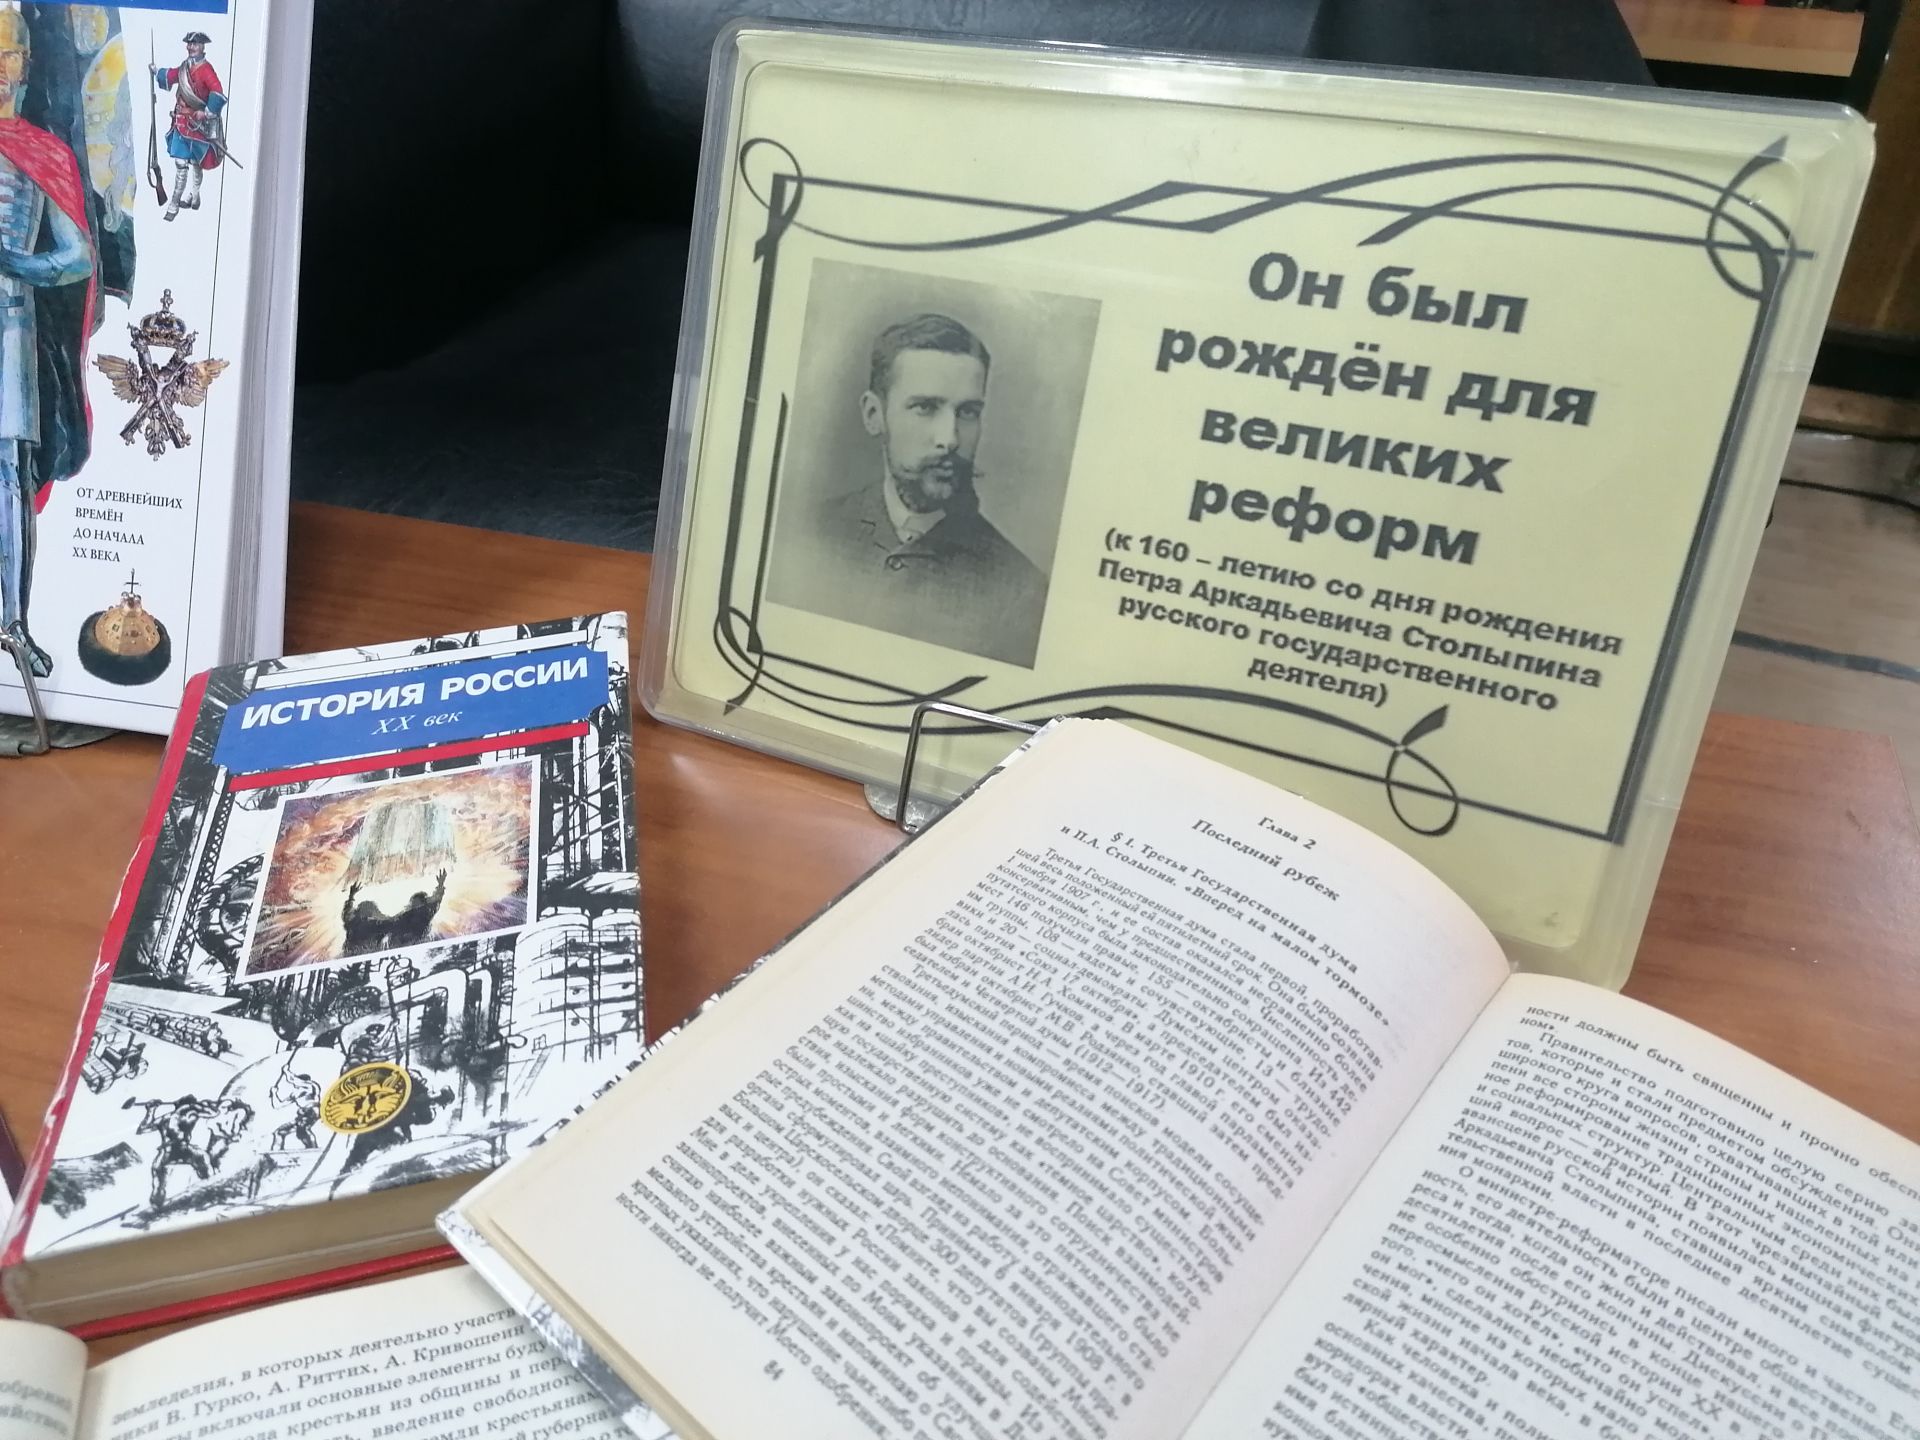 В Центральной библиотеке Лаишева отметили юбилей великого российского реформатора   